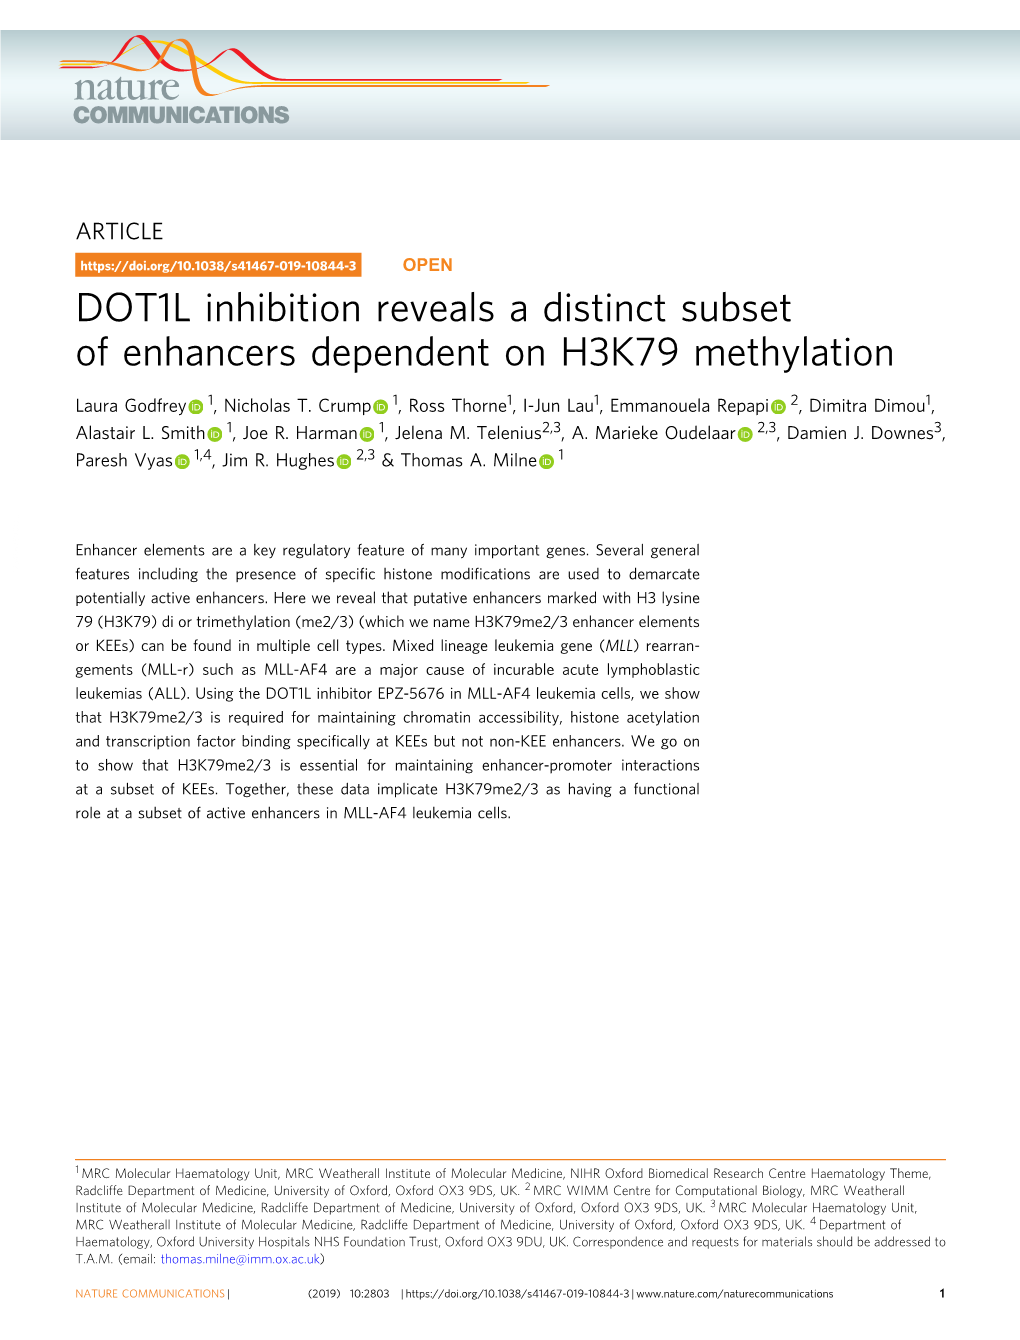 DOT1L Inhibition Reveals a Distinct Subset of Enhancers Dependent on H3K79 Methylation